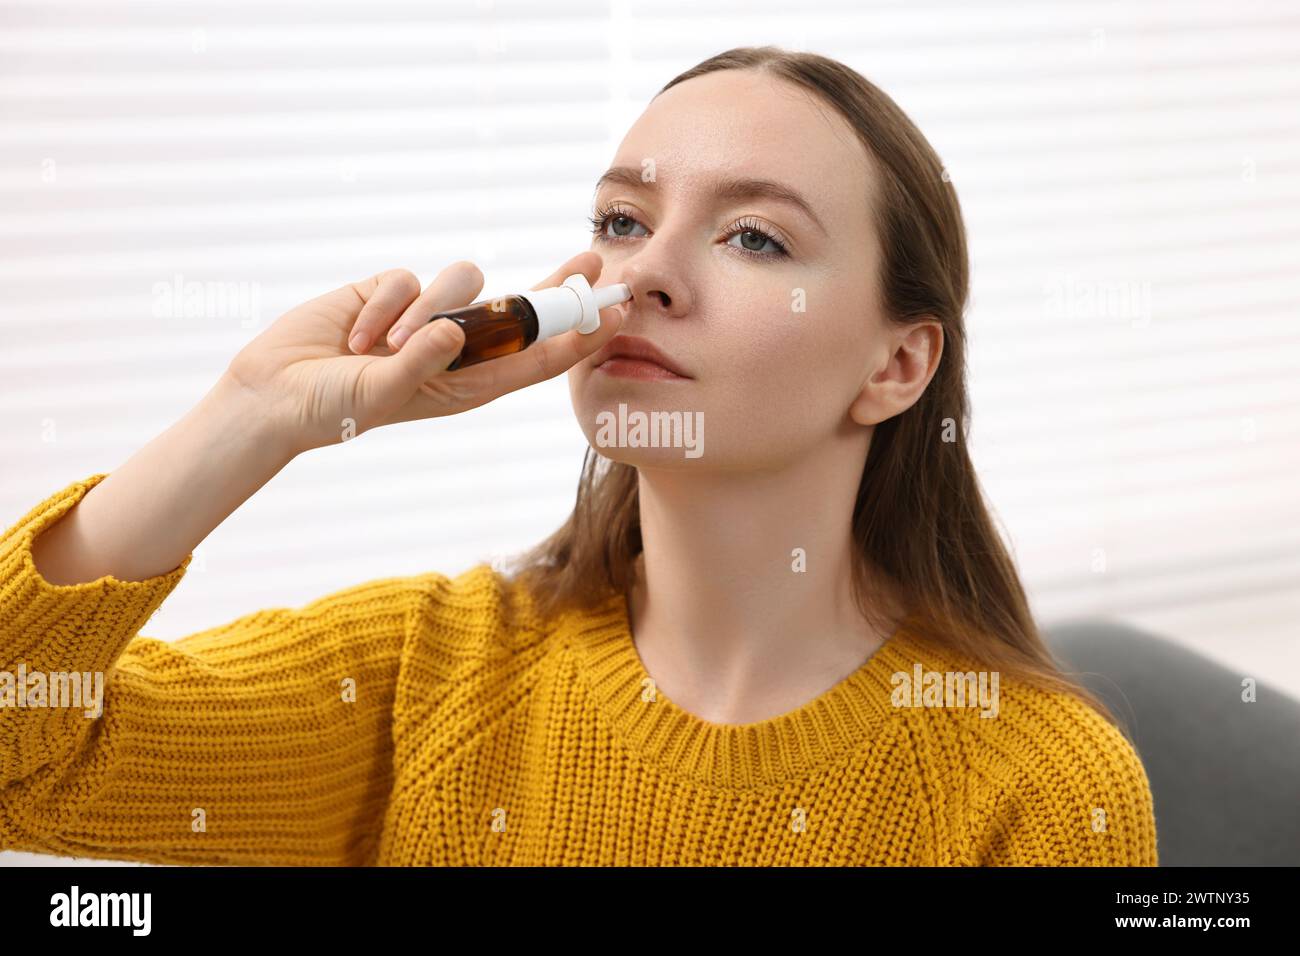 Medical drops. Young woman using nasal spray indoors Stock Photo